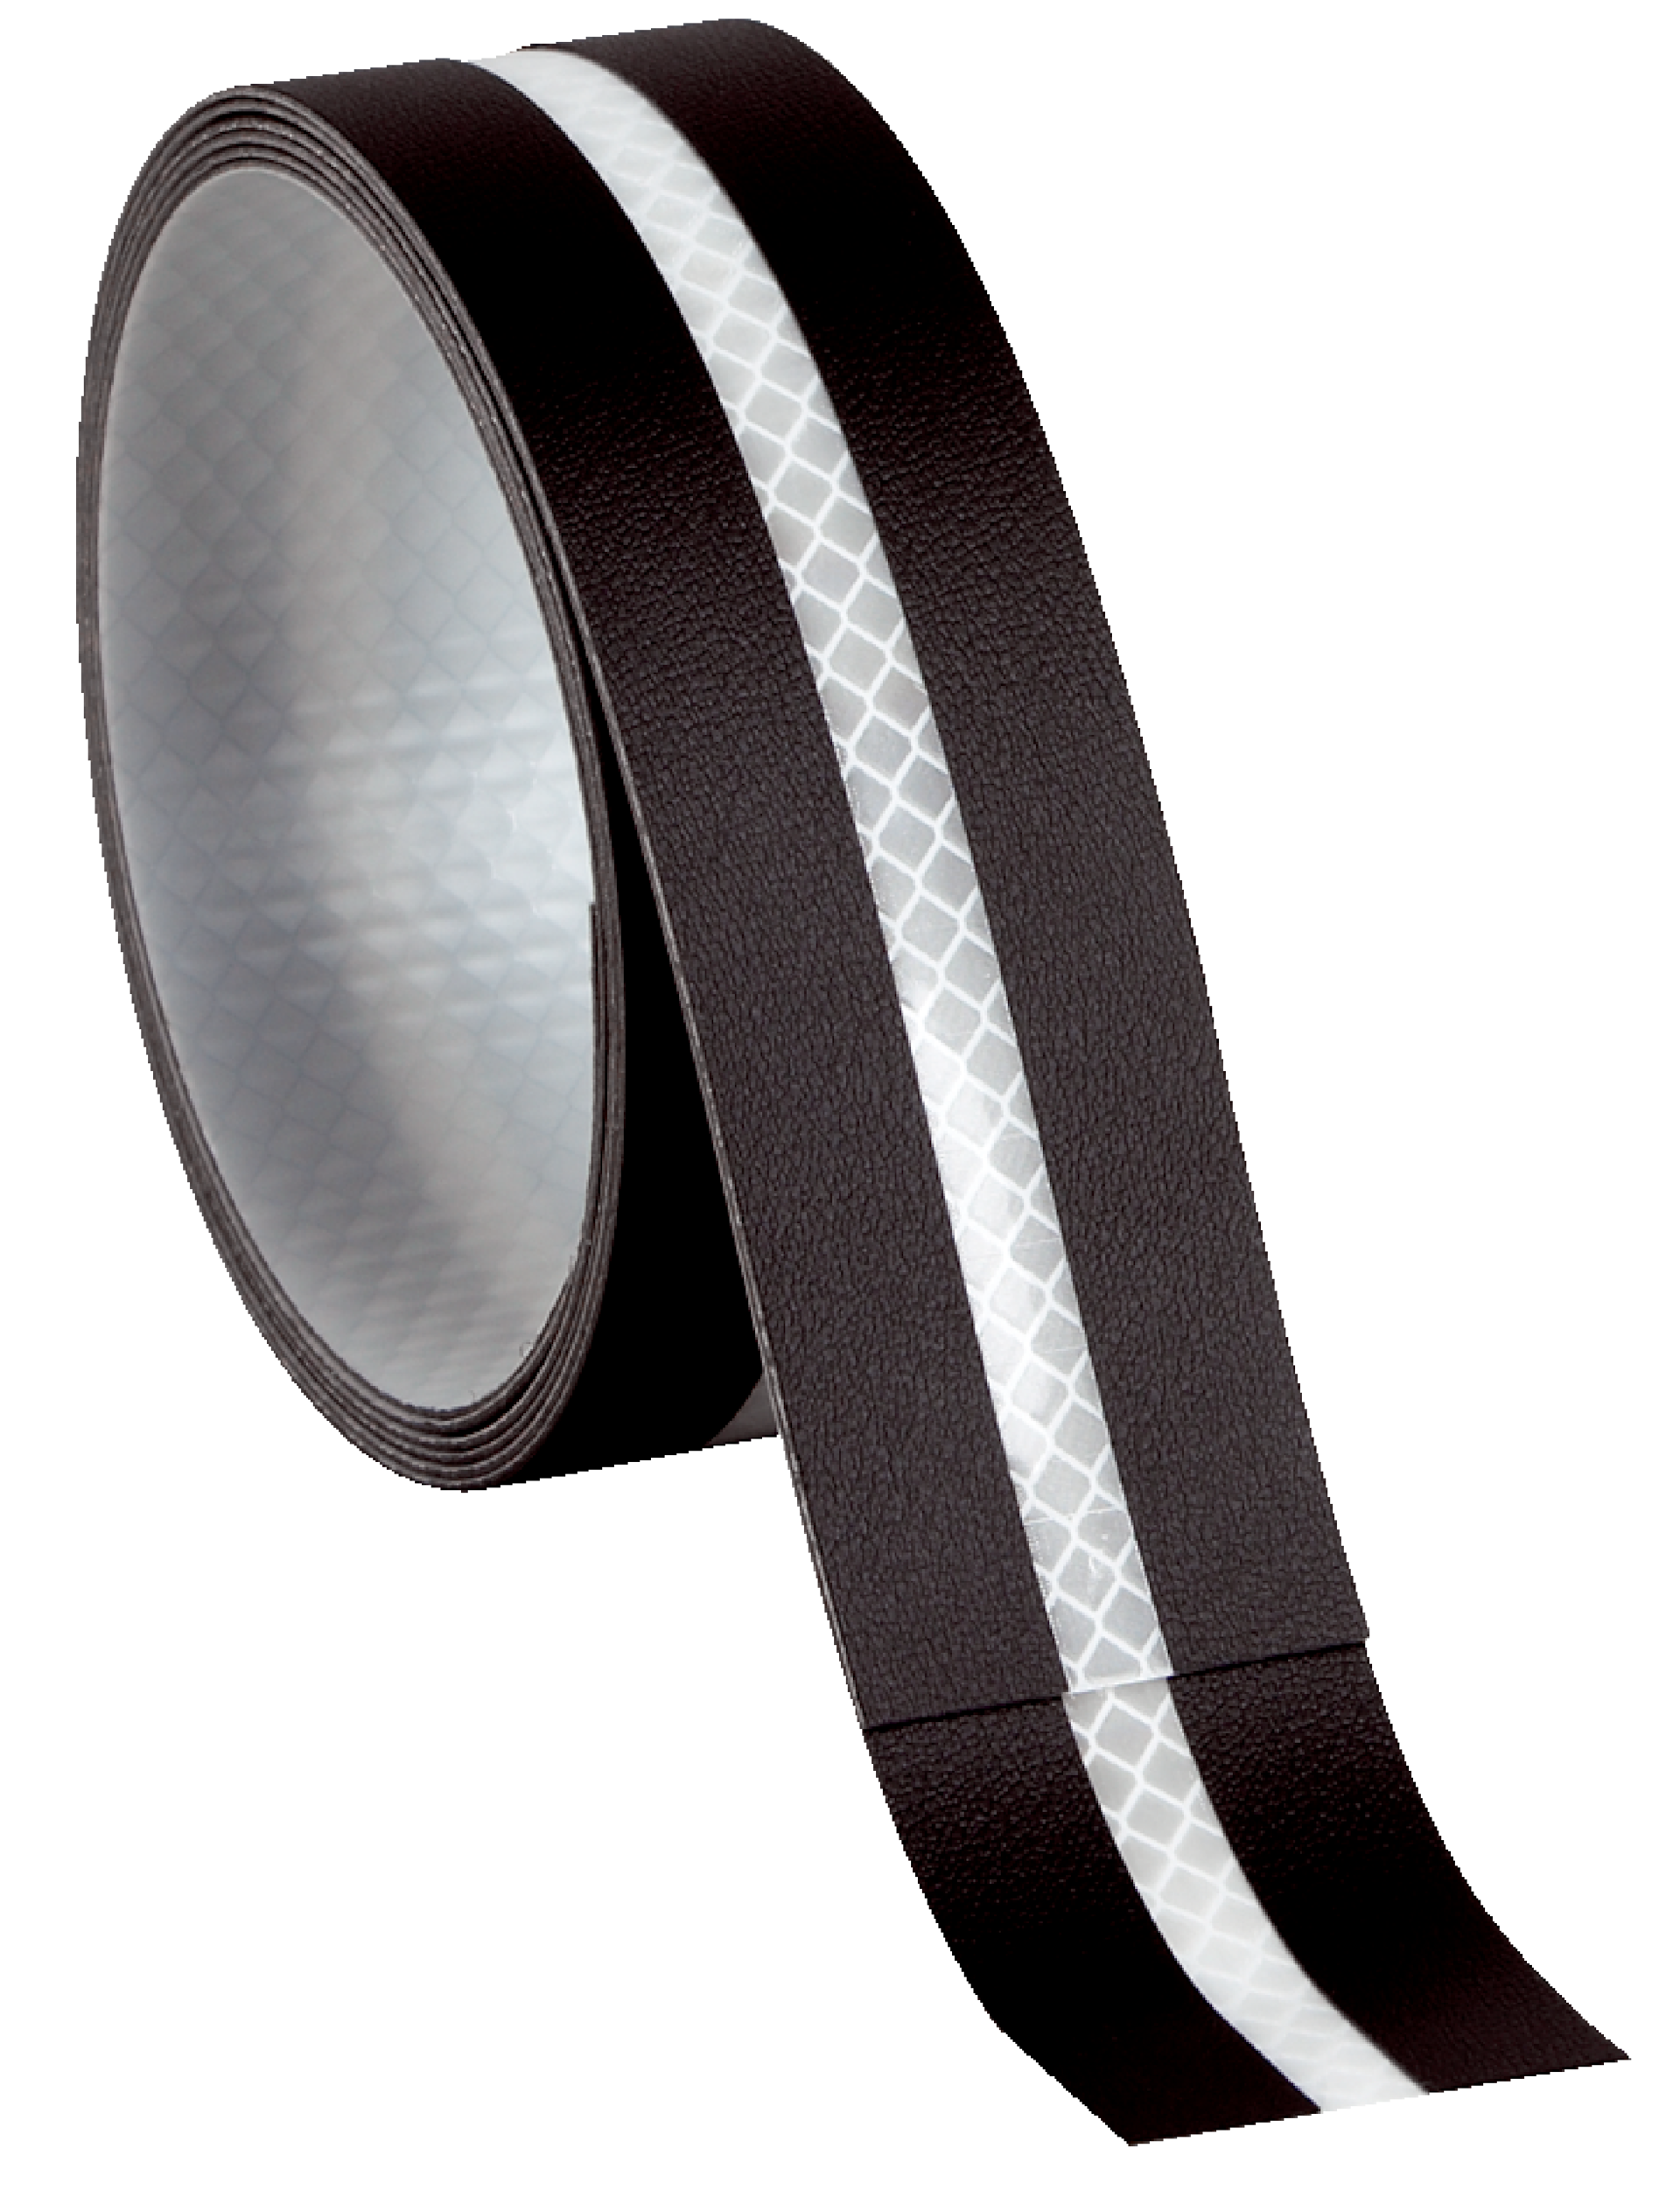  TUKA-i-AKUT 46 Meter x 20mm Reflektierendes Band zum Aufnähen,  Reflektorband - 20 mm Breite - mit 10mm Reflektionband - Sicherheit  Reflexband Leuchtband zum Annähen, Grau, TKB5080-grey